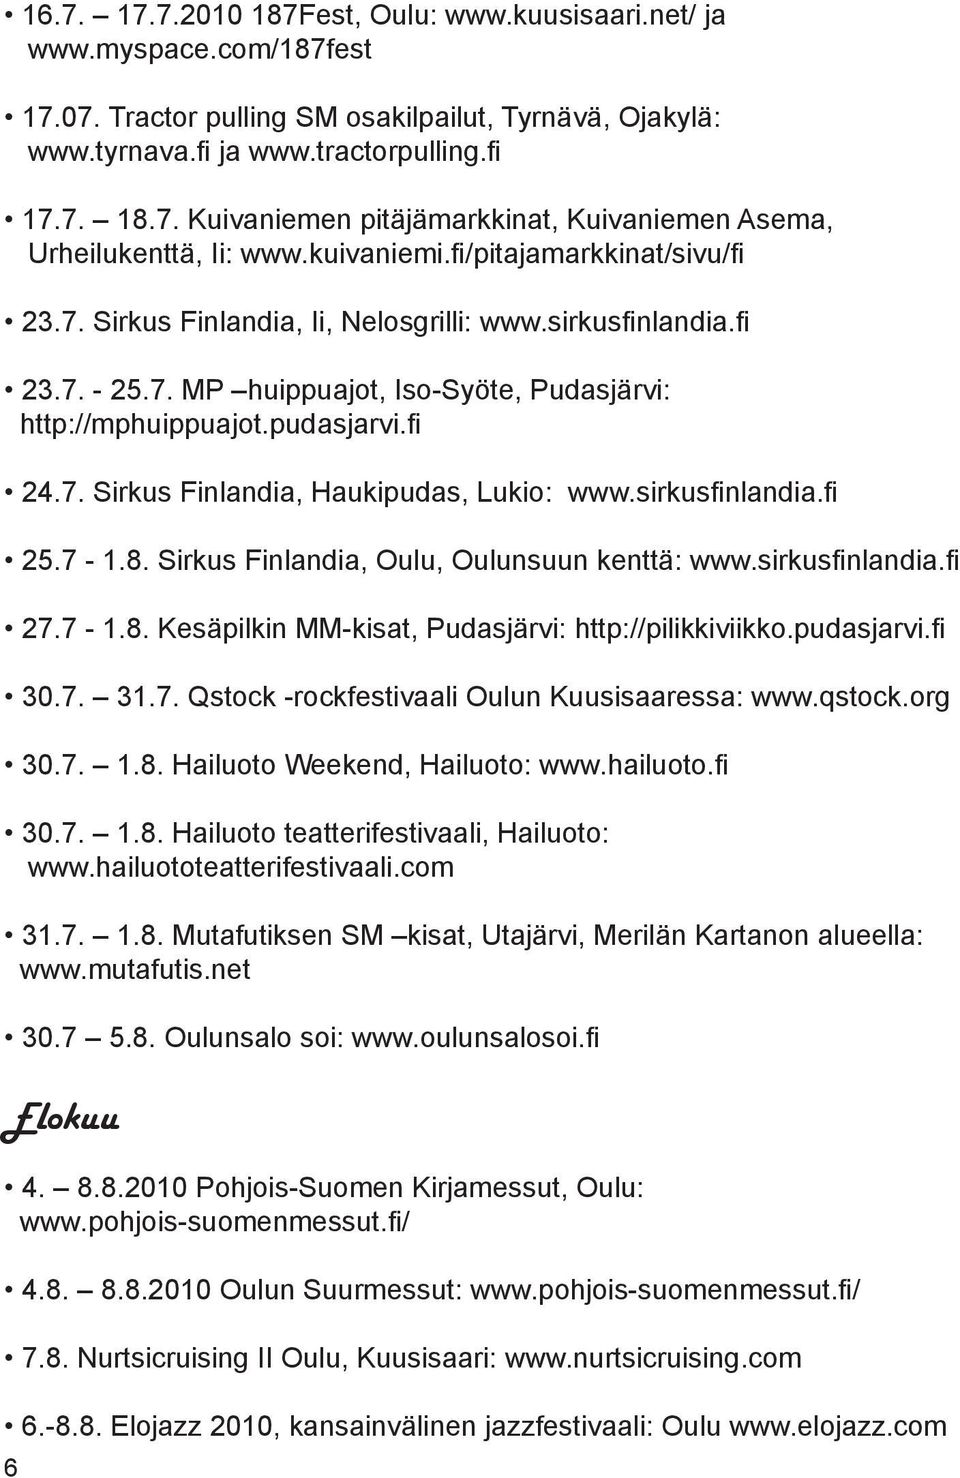 sirkusfinlandia.fi 25.7-1.8. Sirkus Finlandia, Oulu, Oulunsuun kenttä: www.sirkusfinlandia.fi 27.7-1.8. Kesäpilkin MM-kisat, Pudasjärvi: http://pilikkiviikko.pudasjarvi.fi 30.7. 31.7. Qstock -rockfestivaali Oulun Kuusisaaressa: www.